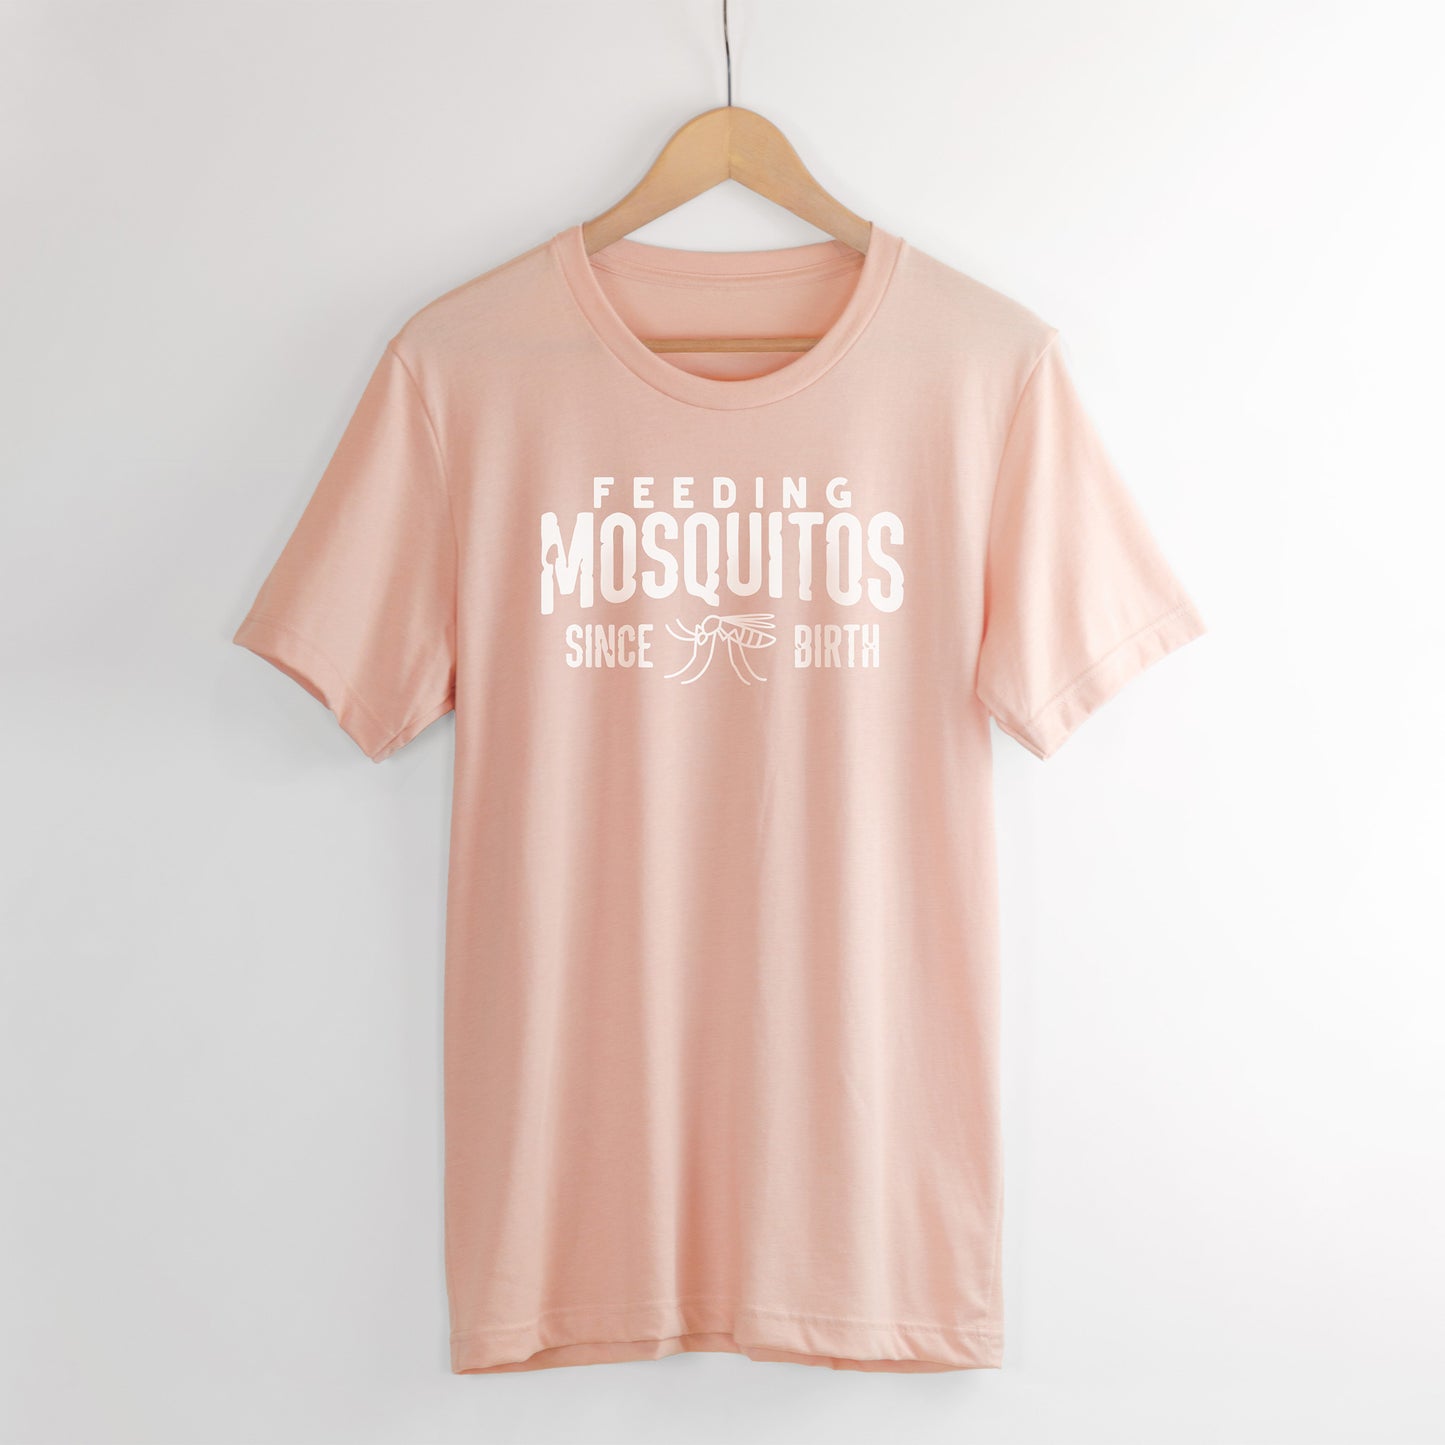 Feeding mosquitos shirt in peach